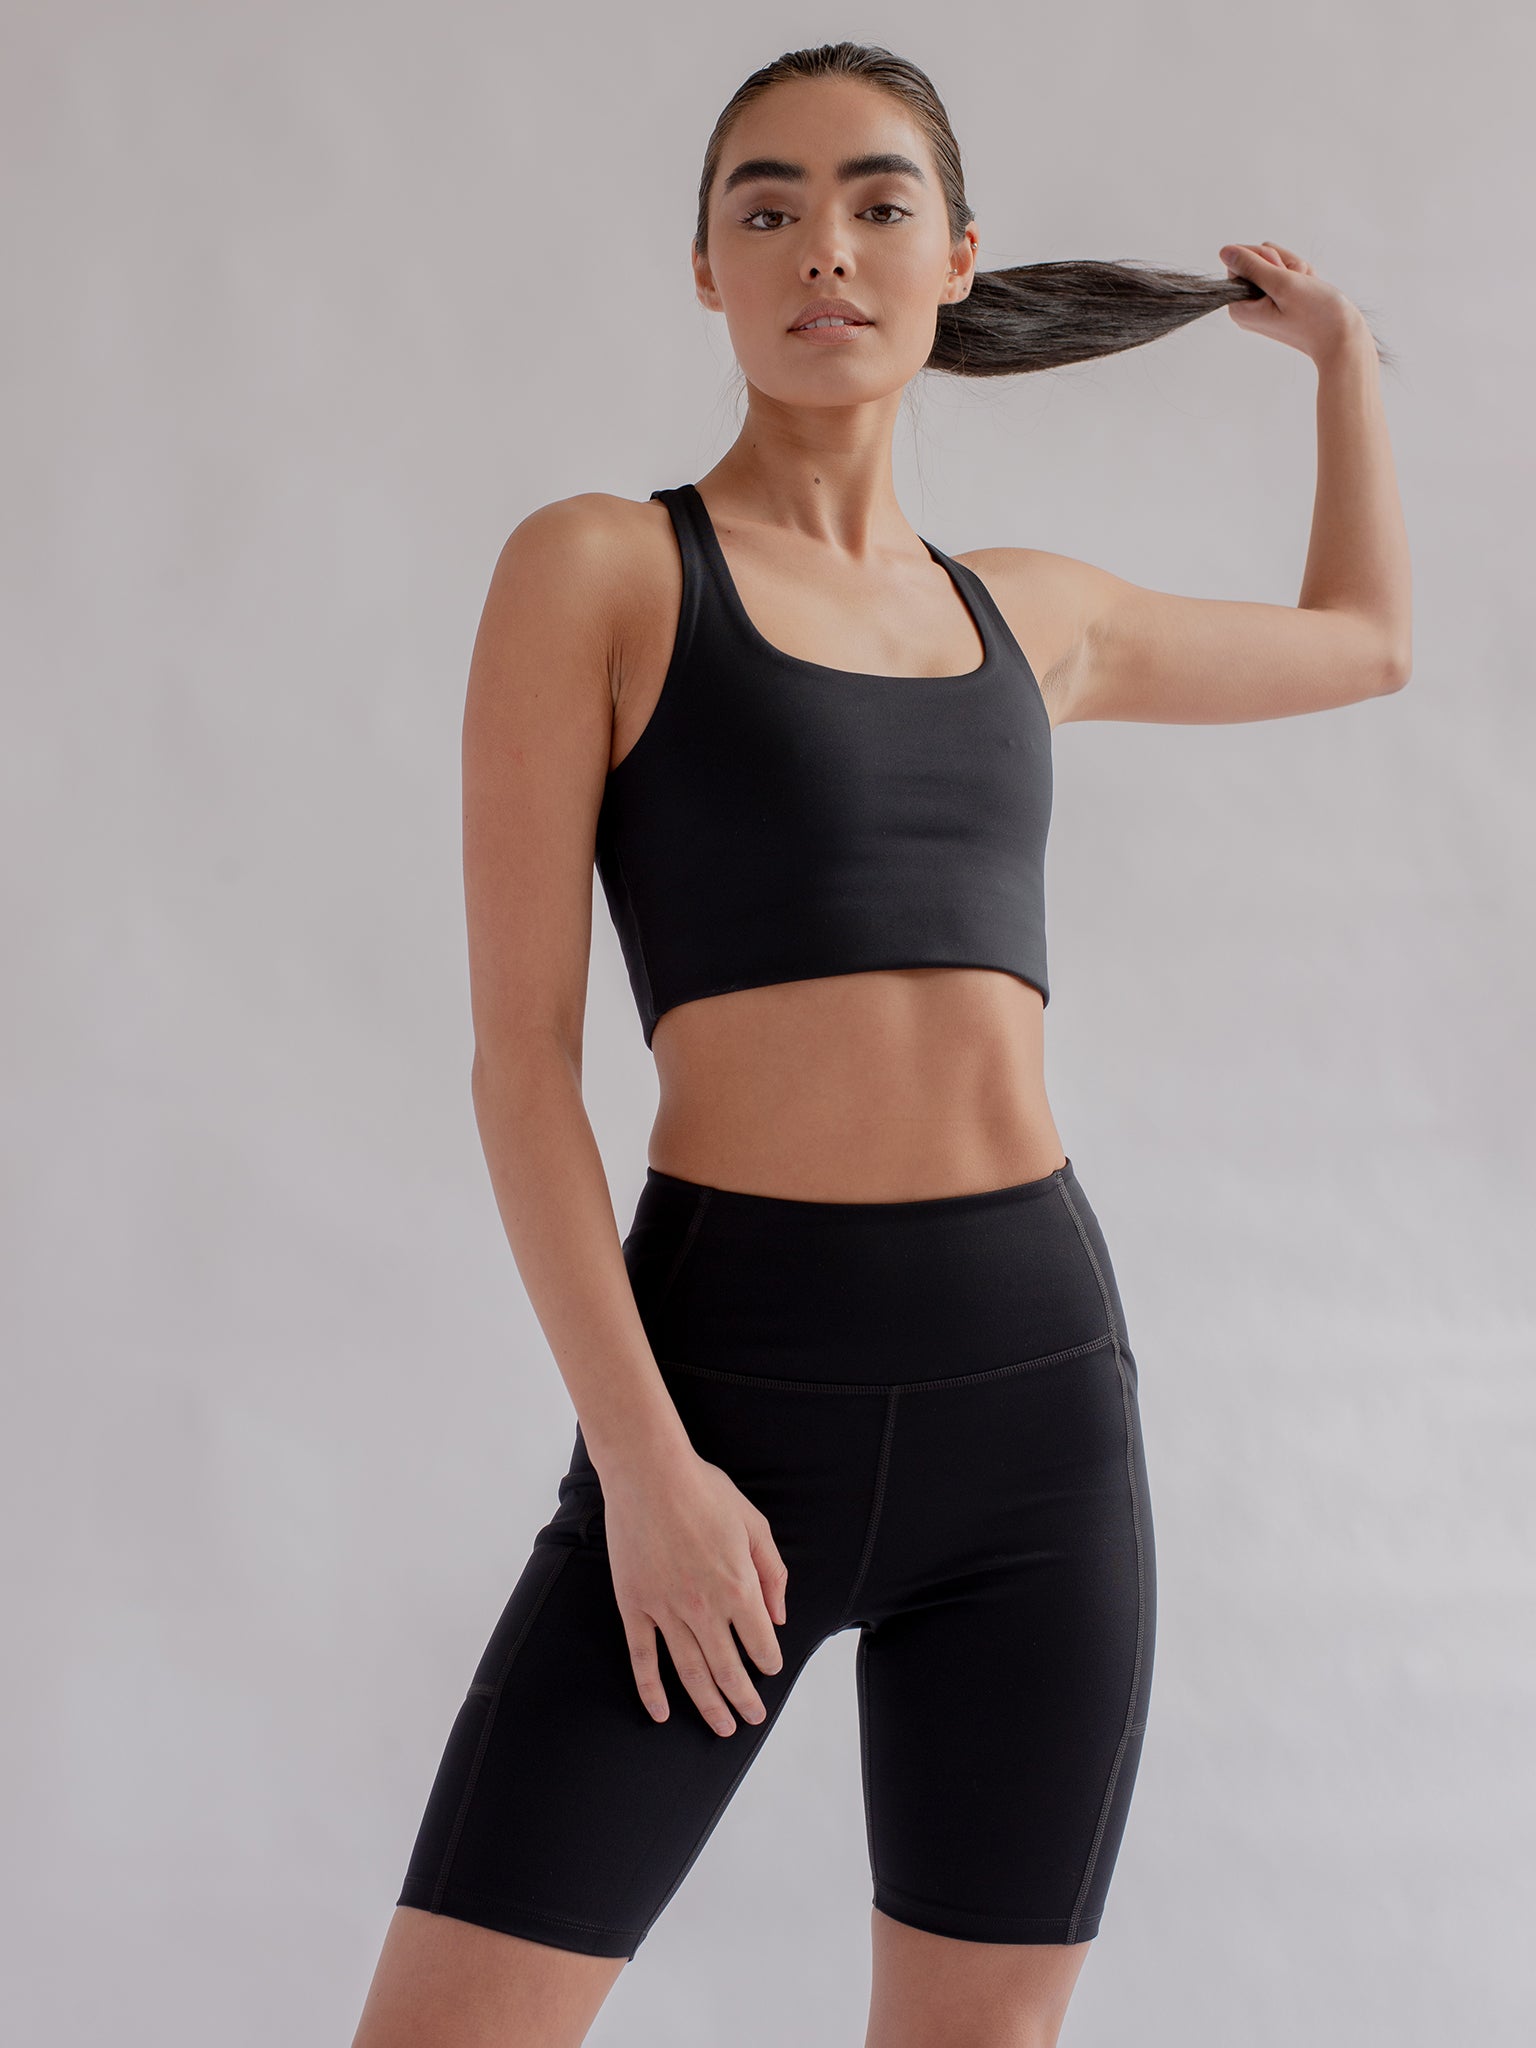 Hot Yoga Shorts in Black – DrishtiFit